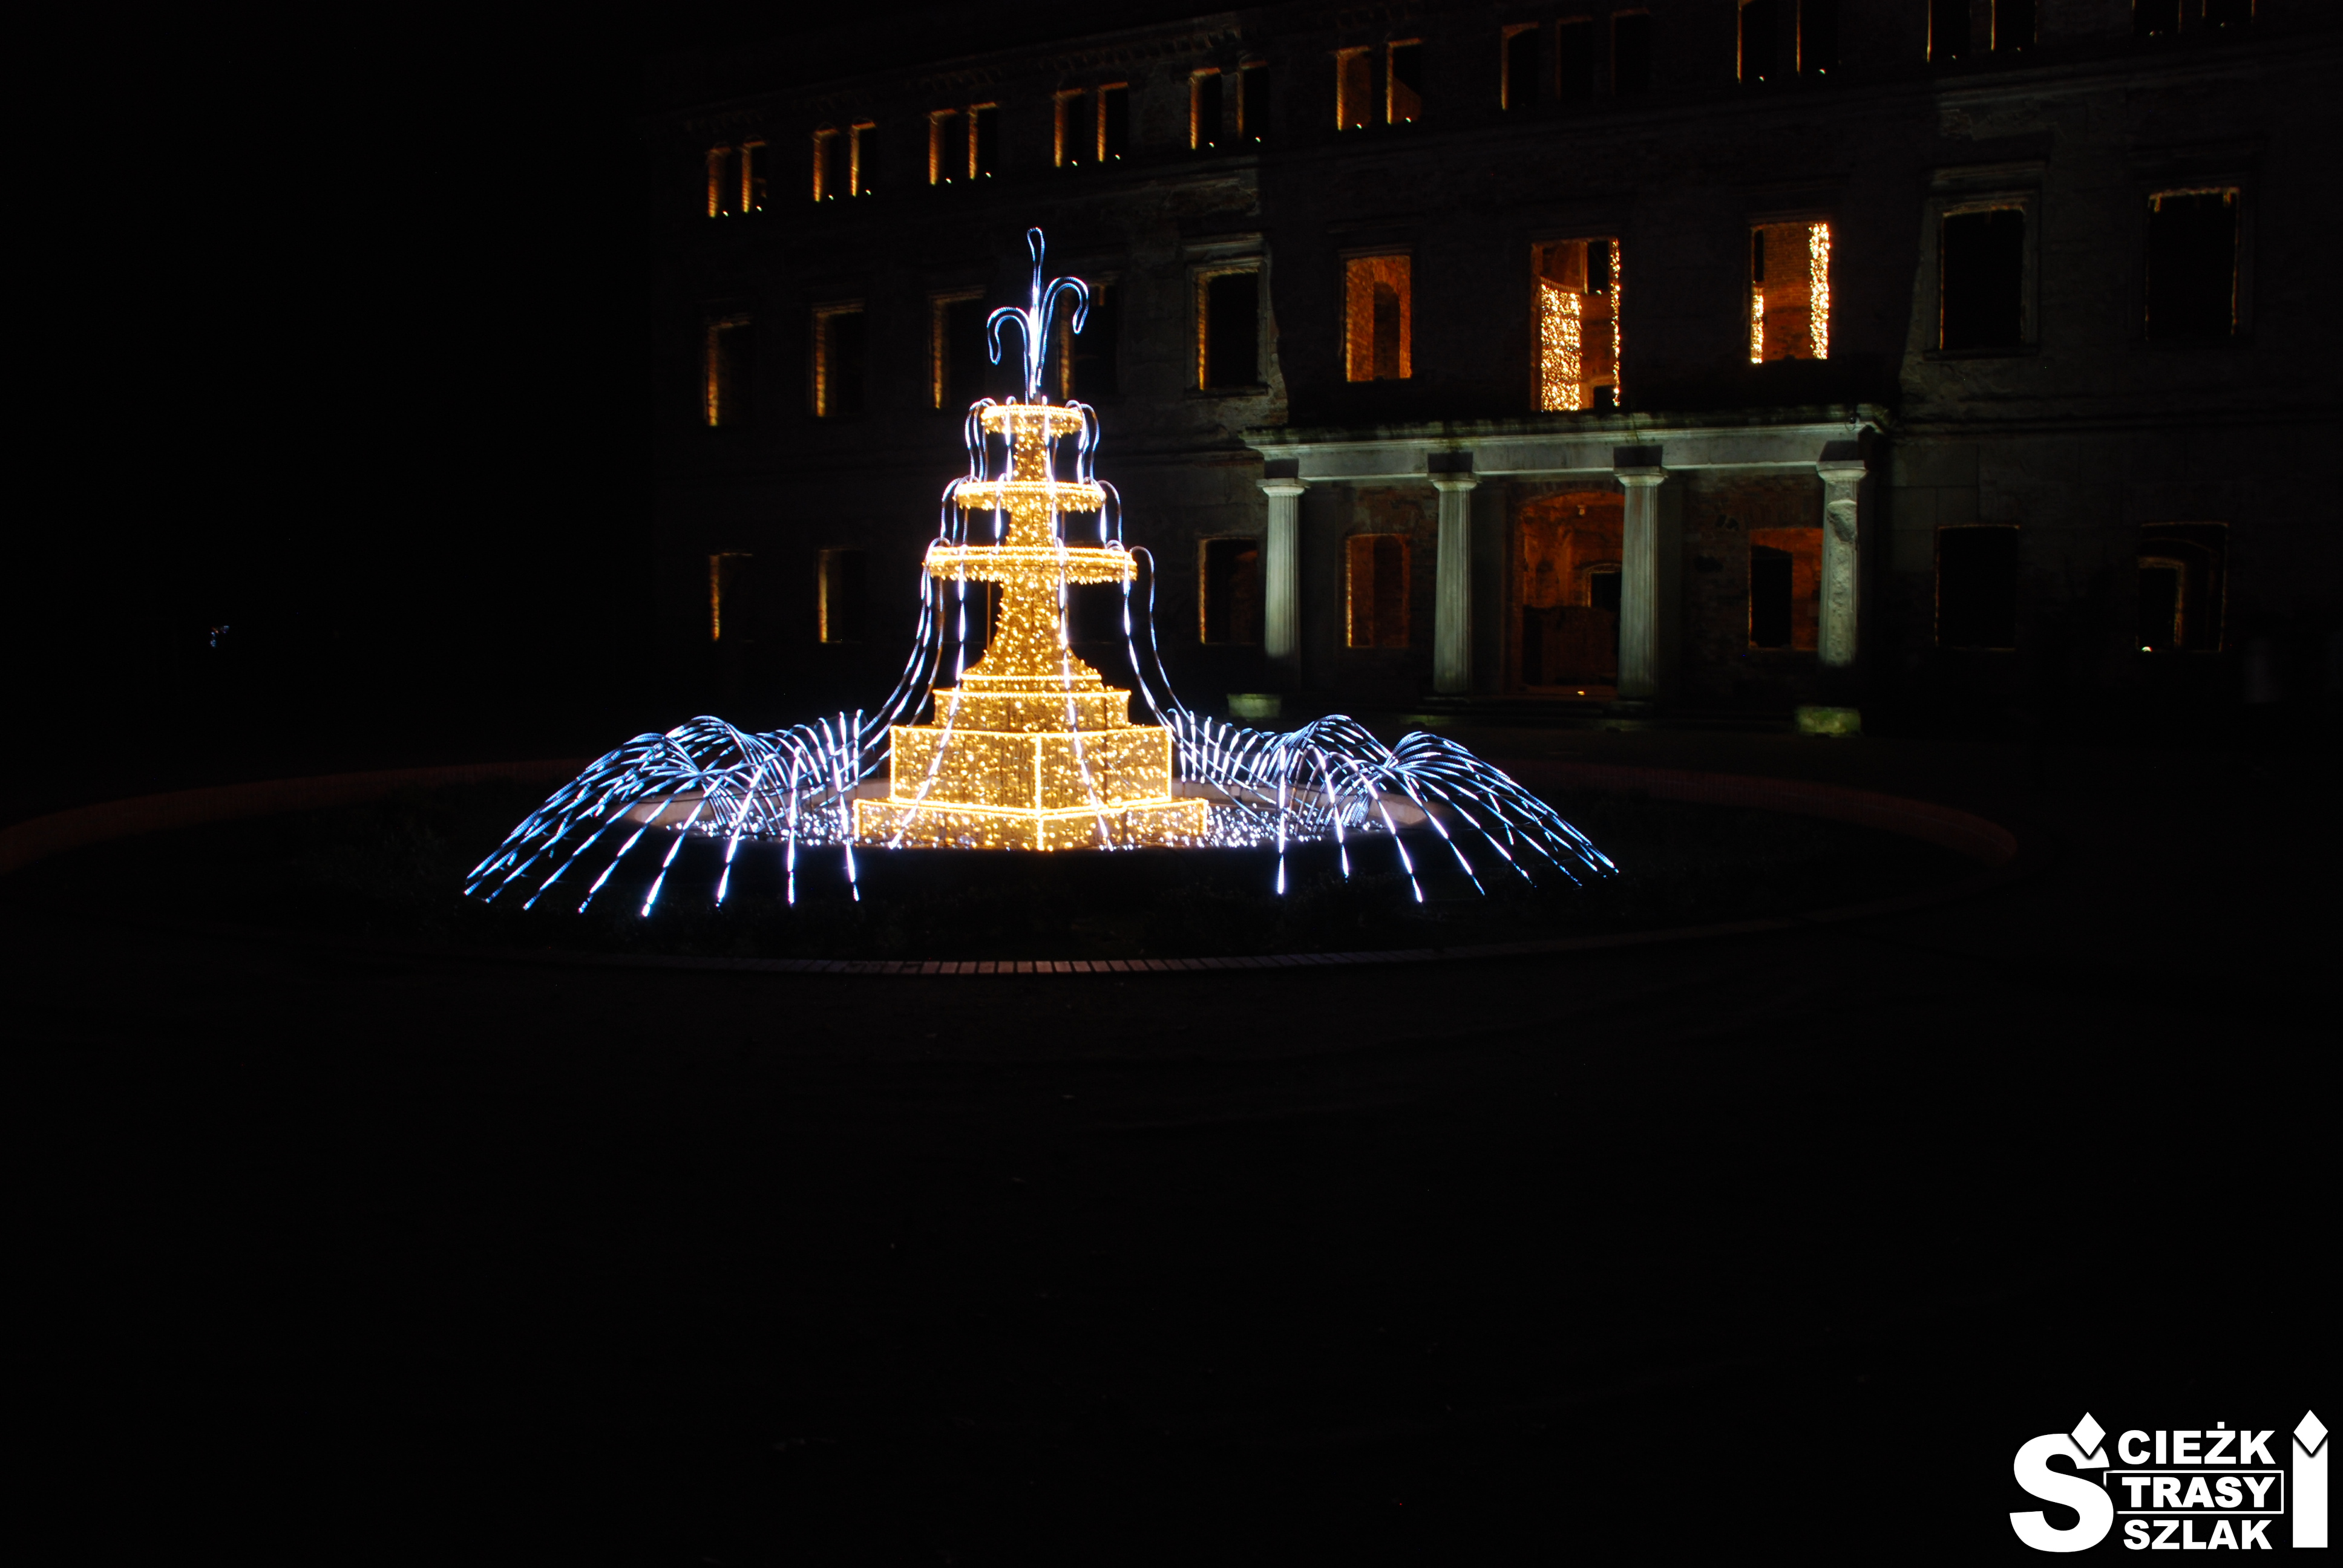 Podświetlona fontanna z imitującymi ruch wody efektami świetlnymi na tle podświetlonego Pałacu w Zatoniu